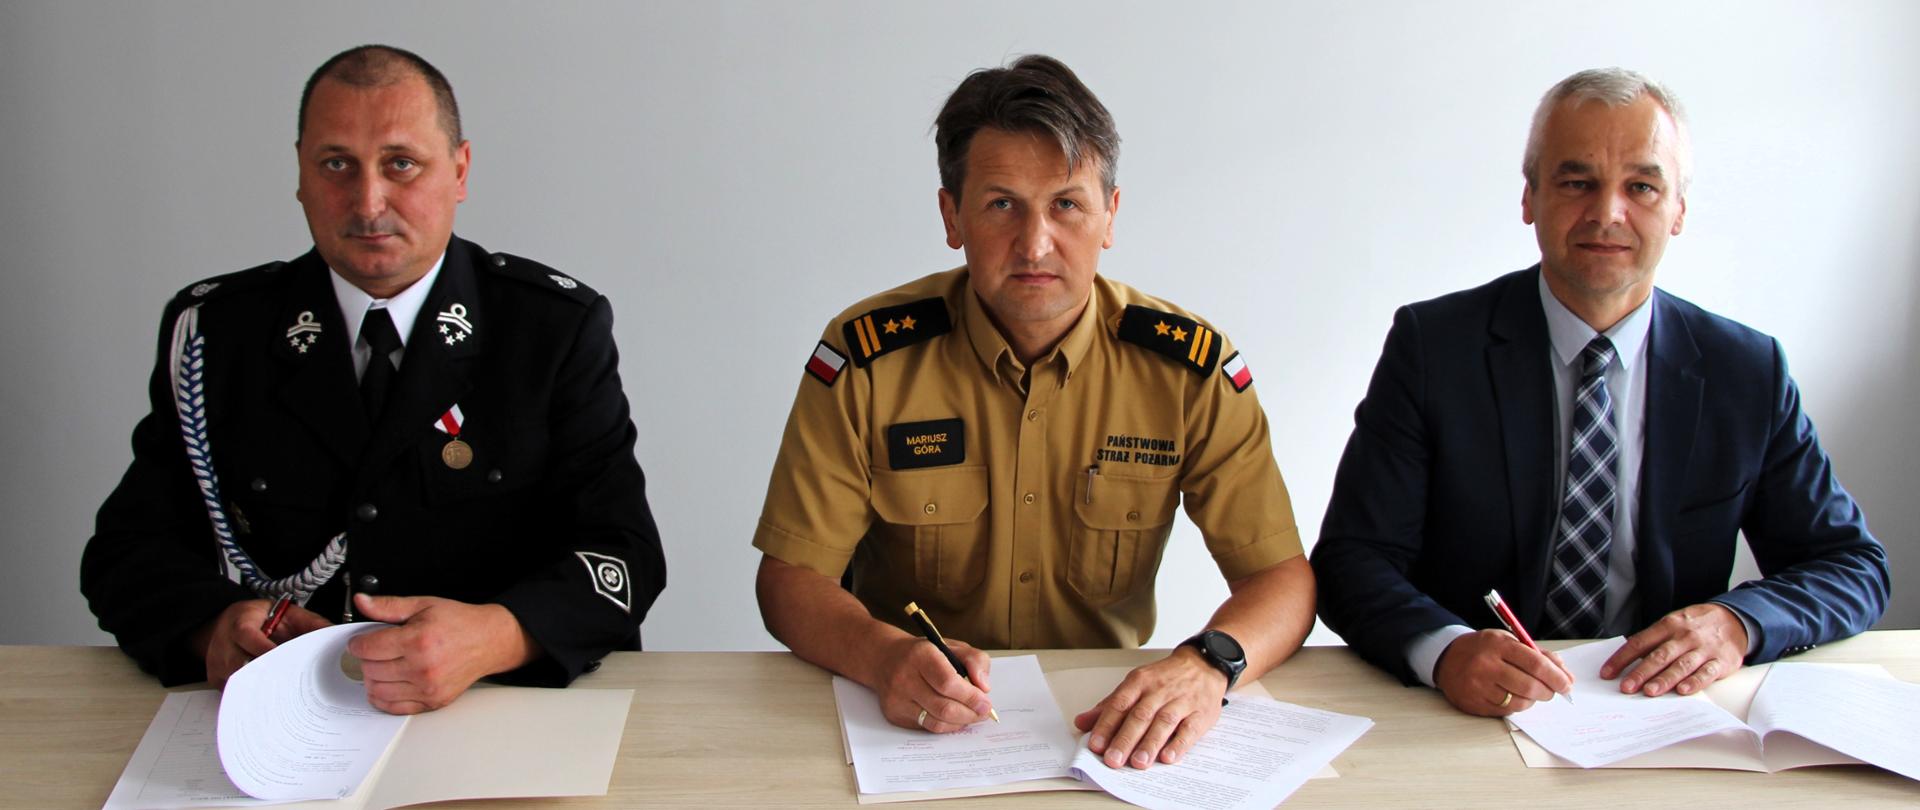 Na zdjęciu pokazano chwilę podpisywania dokumentu o włączeniu OSP Bobrza do KSRG. Od lewej: dh Rafał Banaś, bryg. Mariusz Góra, pan Piotr Buras.